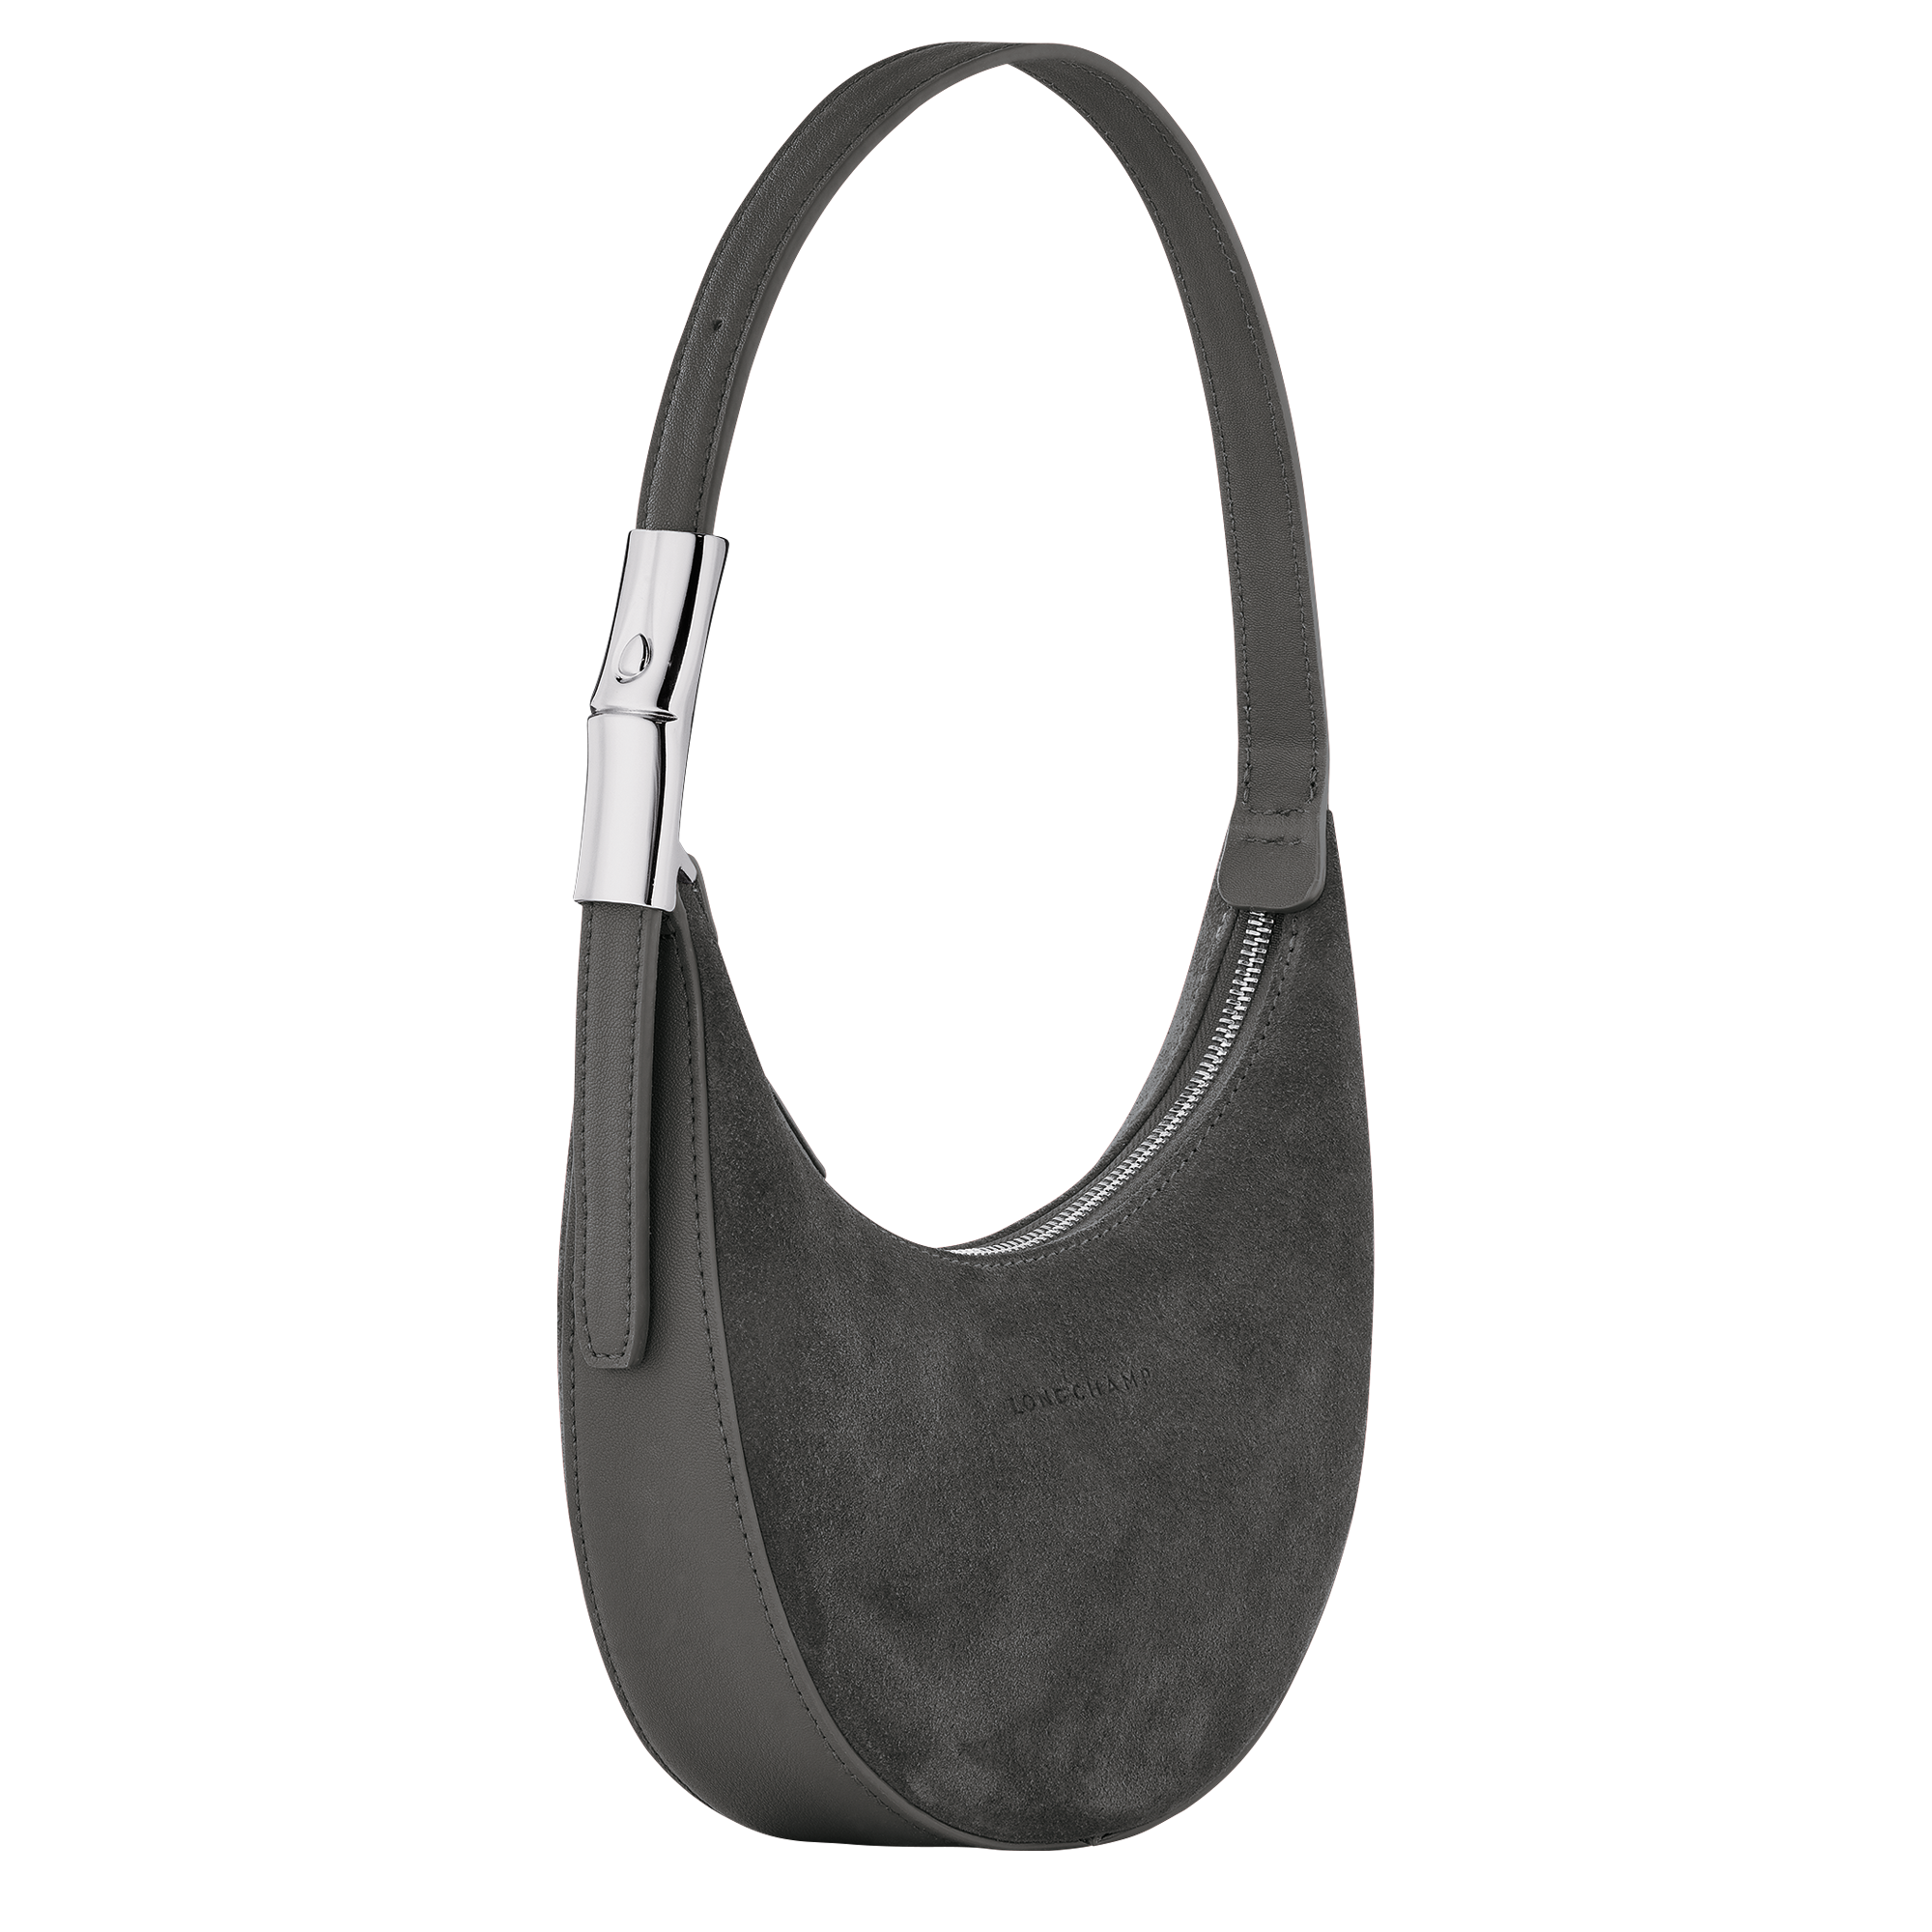 Longchamp Medium Roseau Essential Half Moon Hobo Bag in Anthracite